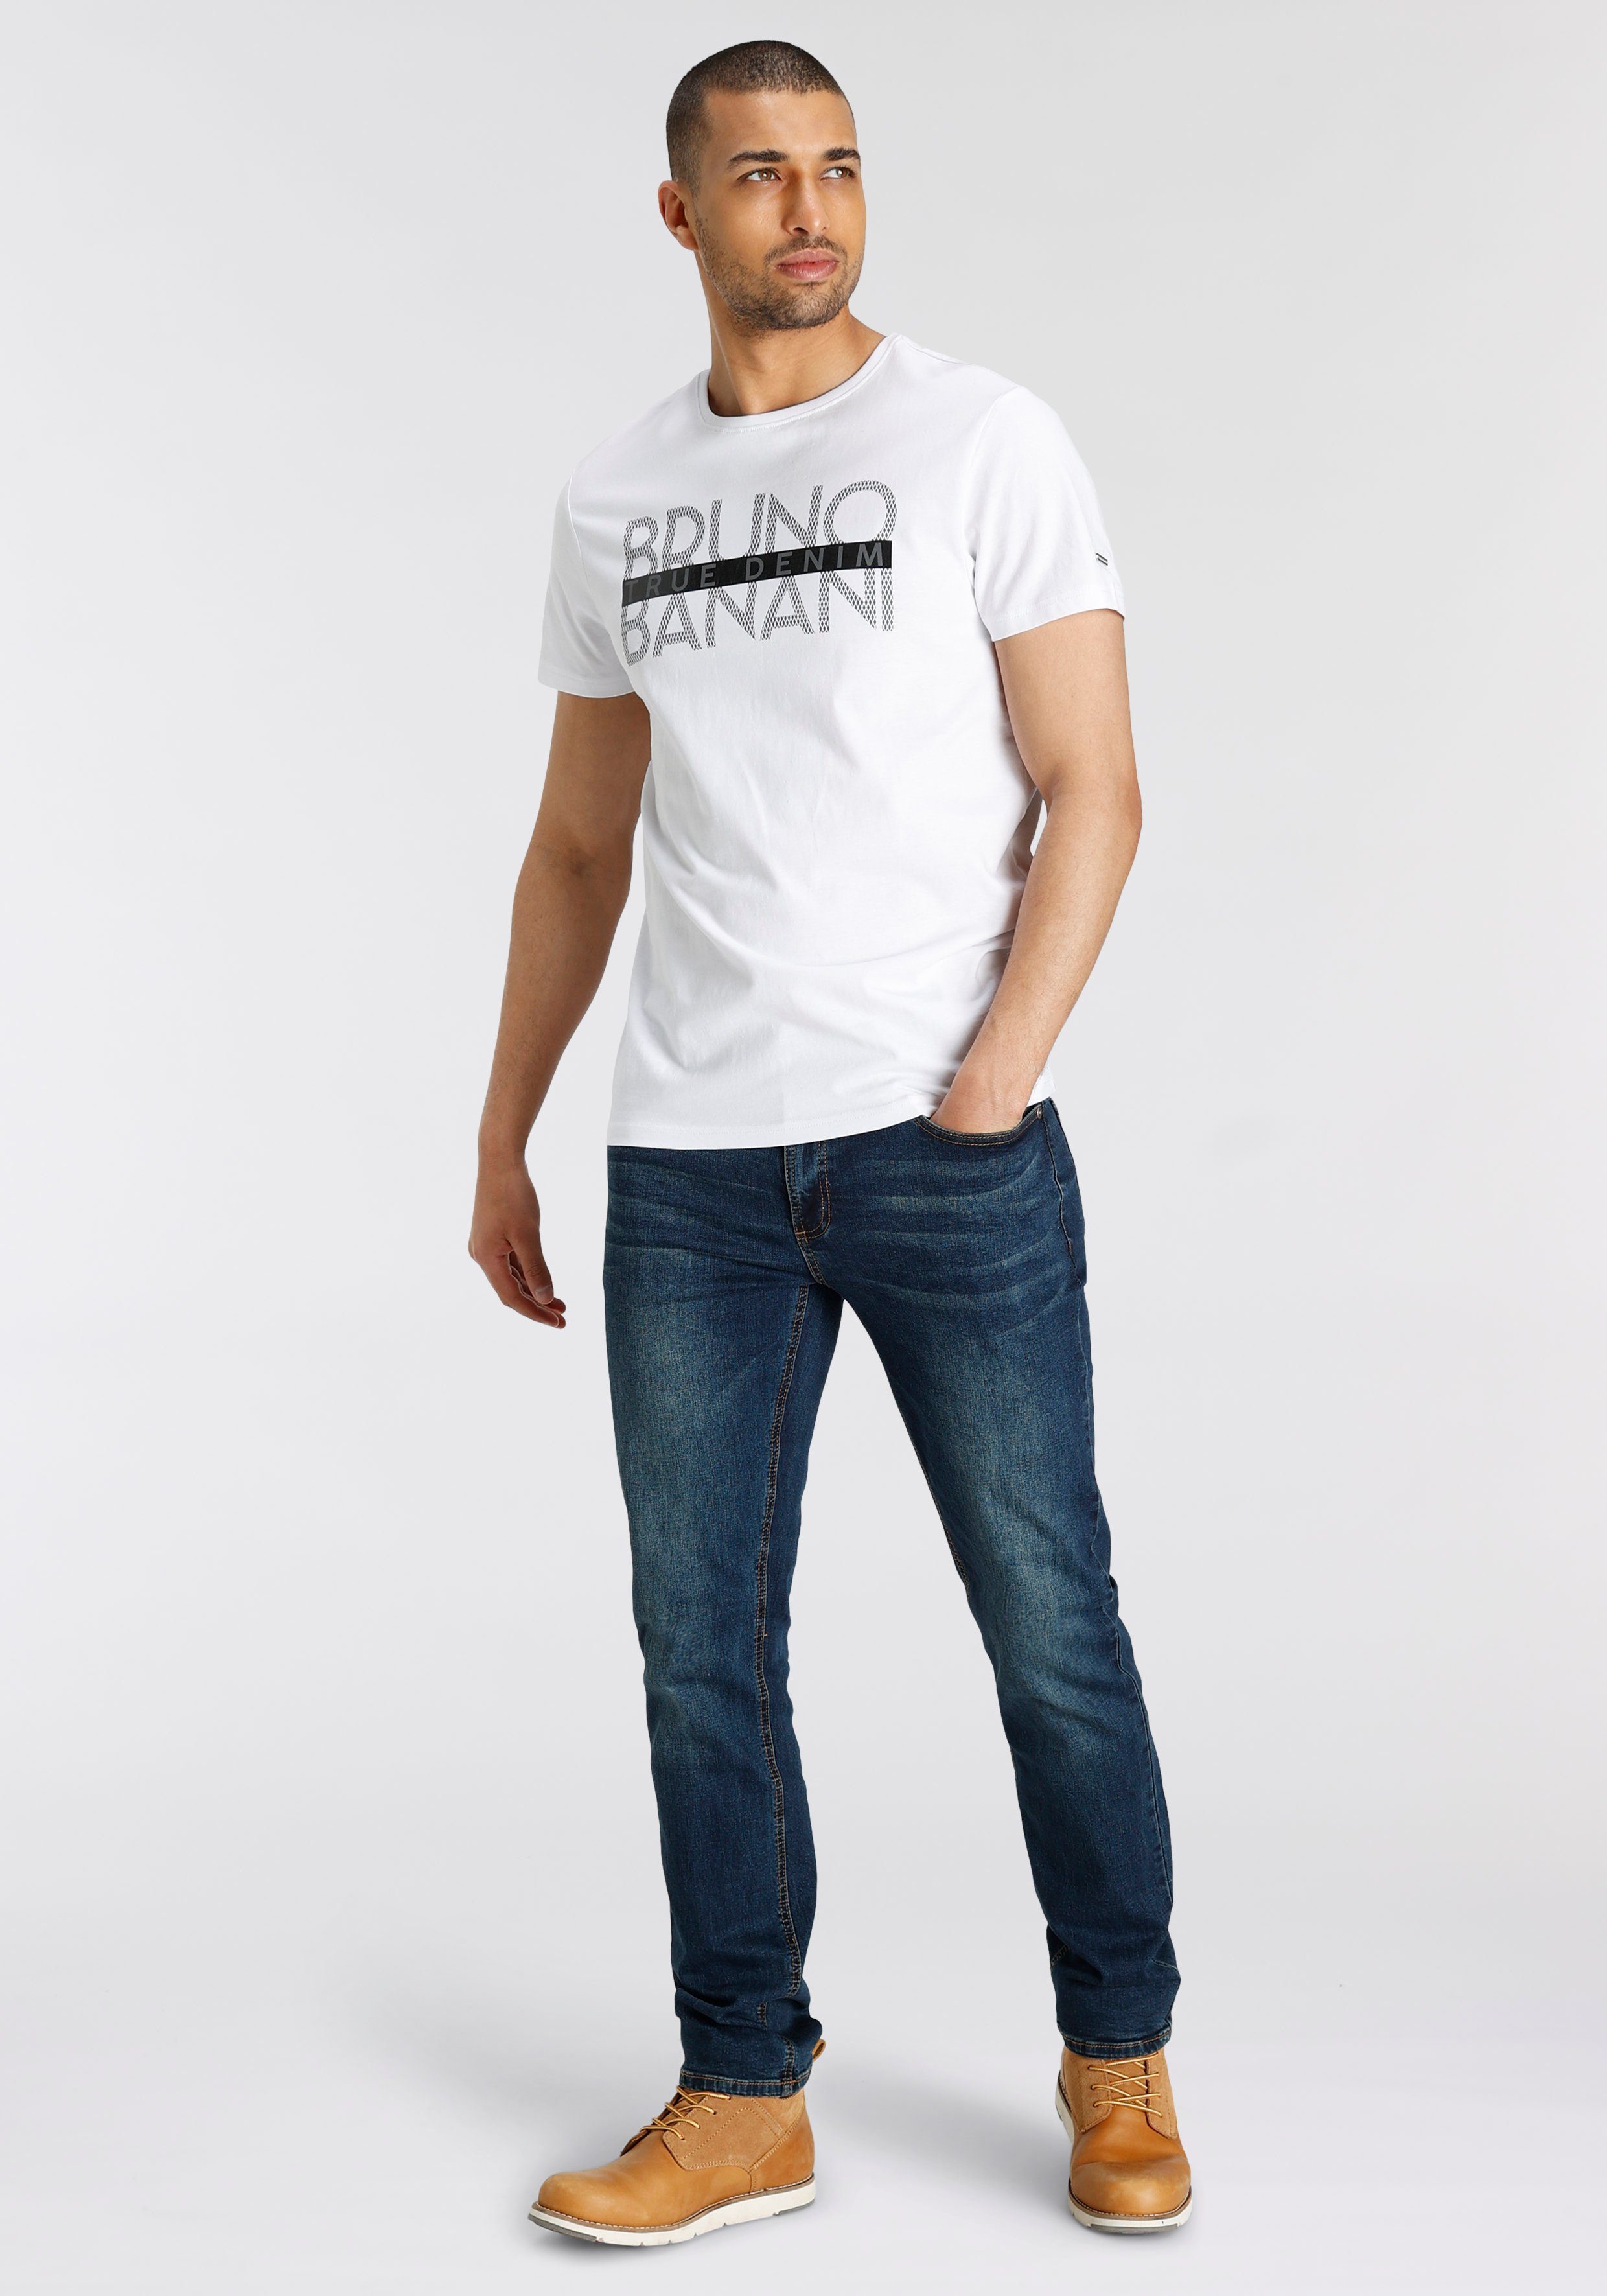 T-Shirt glänzendem Print mit weiß Bruno Banani